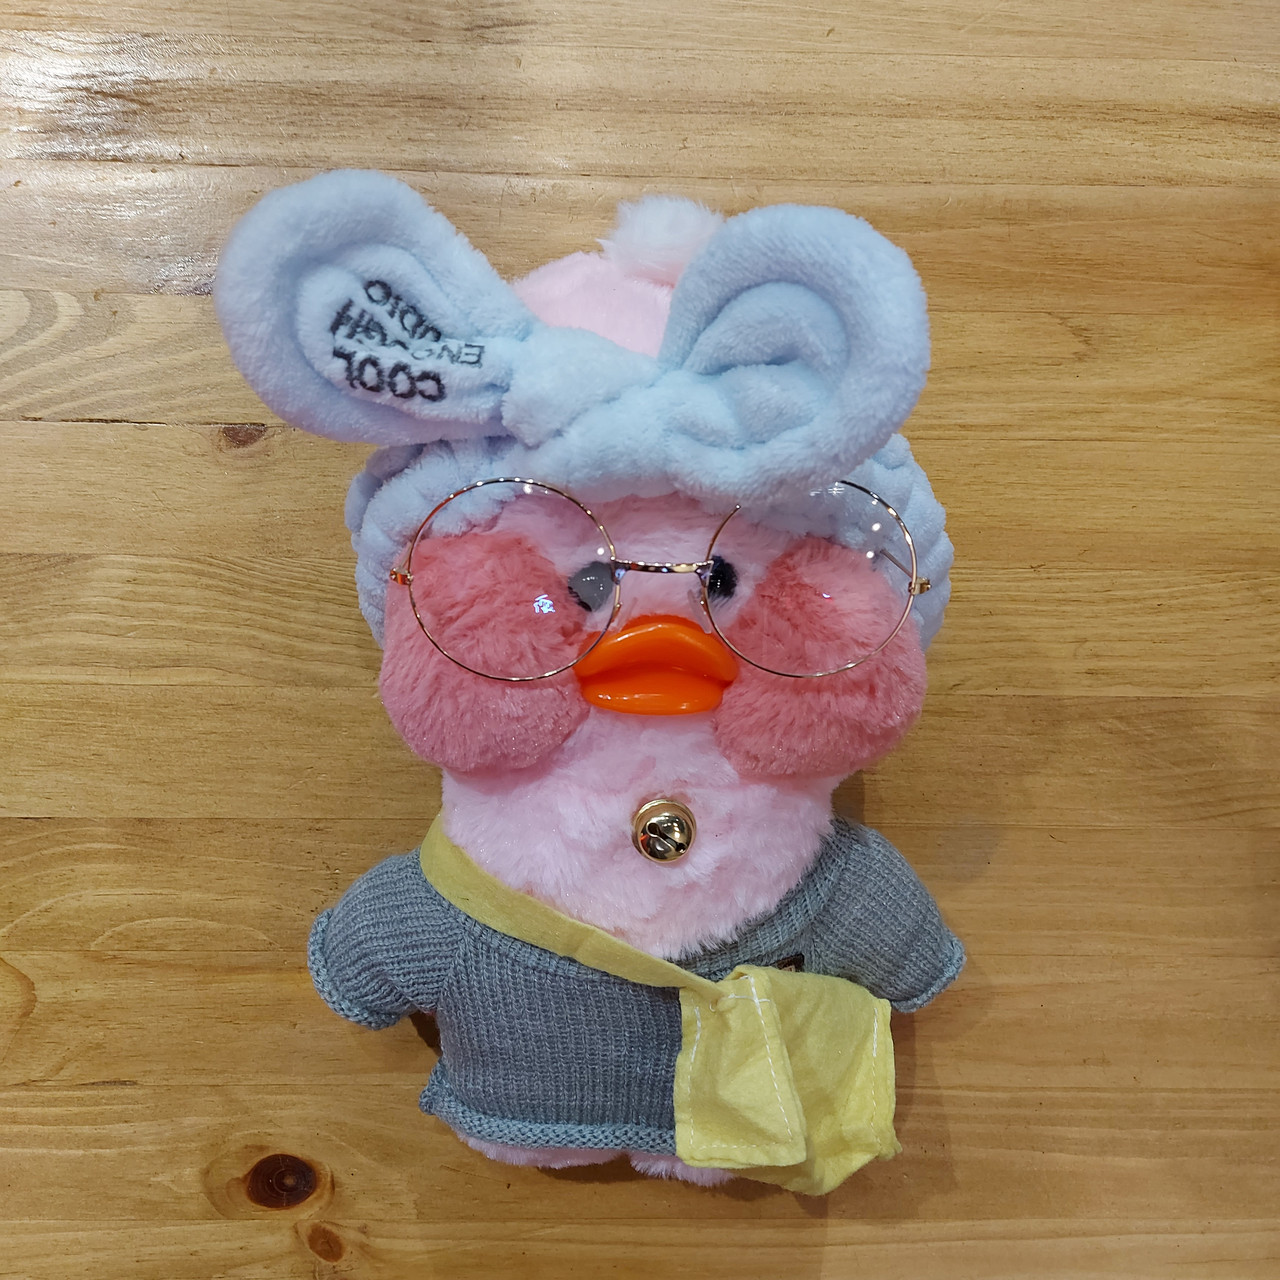 Плюшевая игрушка - Лалафанфан Уточка. Корейская уточка. #lalafanfan. Lalafanfan Duck. Розово-серая Утка.